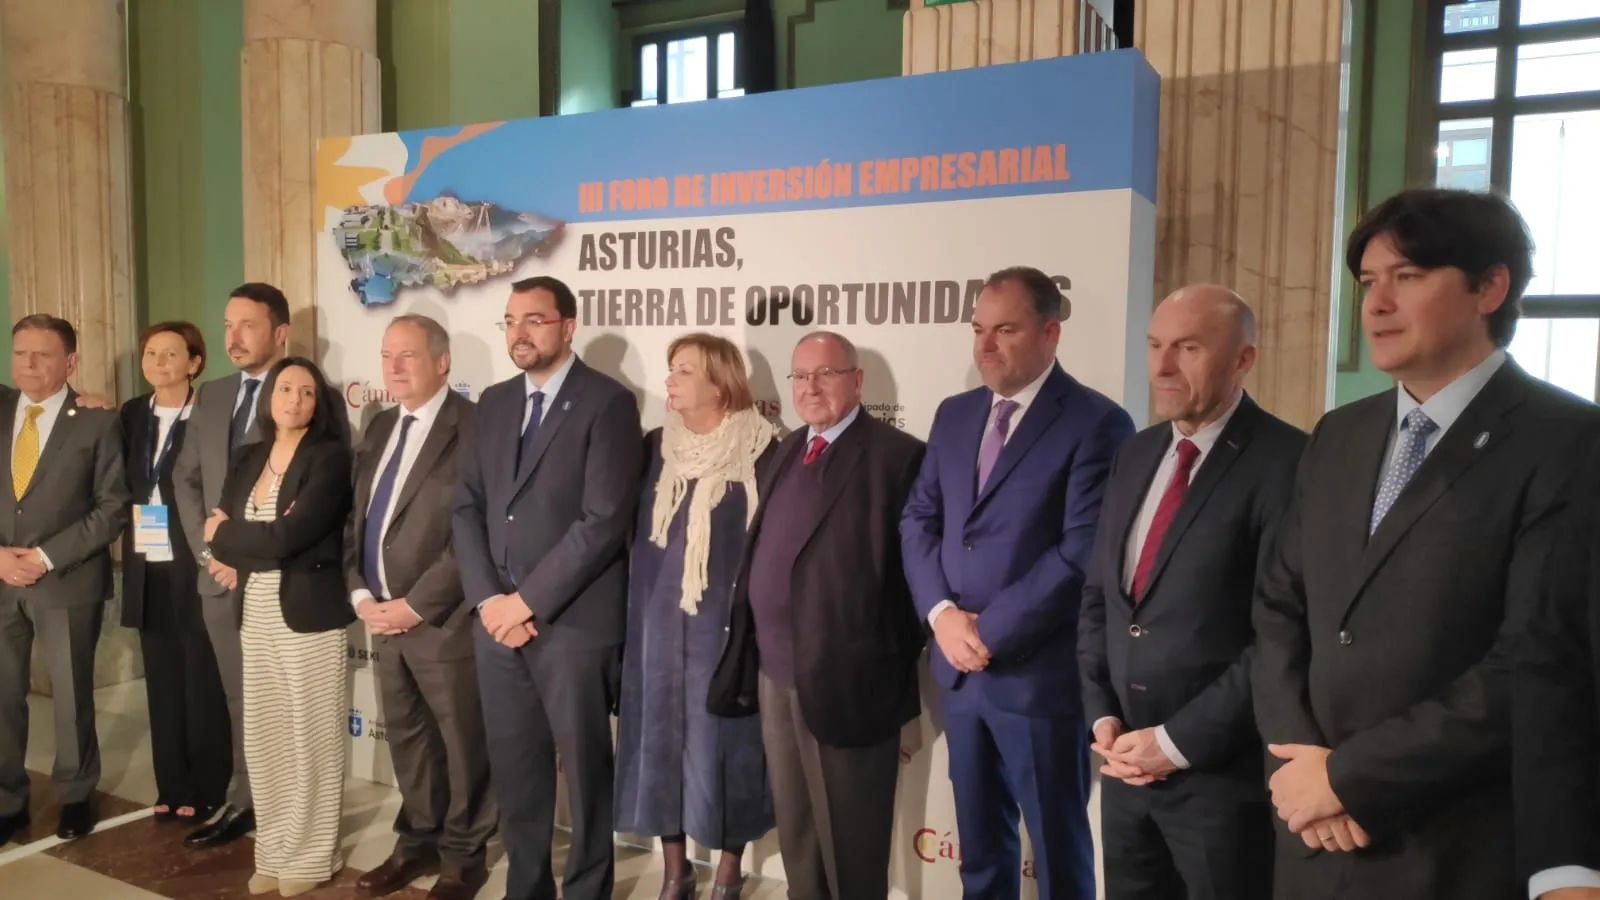 El presidente de la Cámara de España participa en el III Foro de Inversión Empresarial ‘Asturias, tierra de oportunidades’